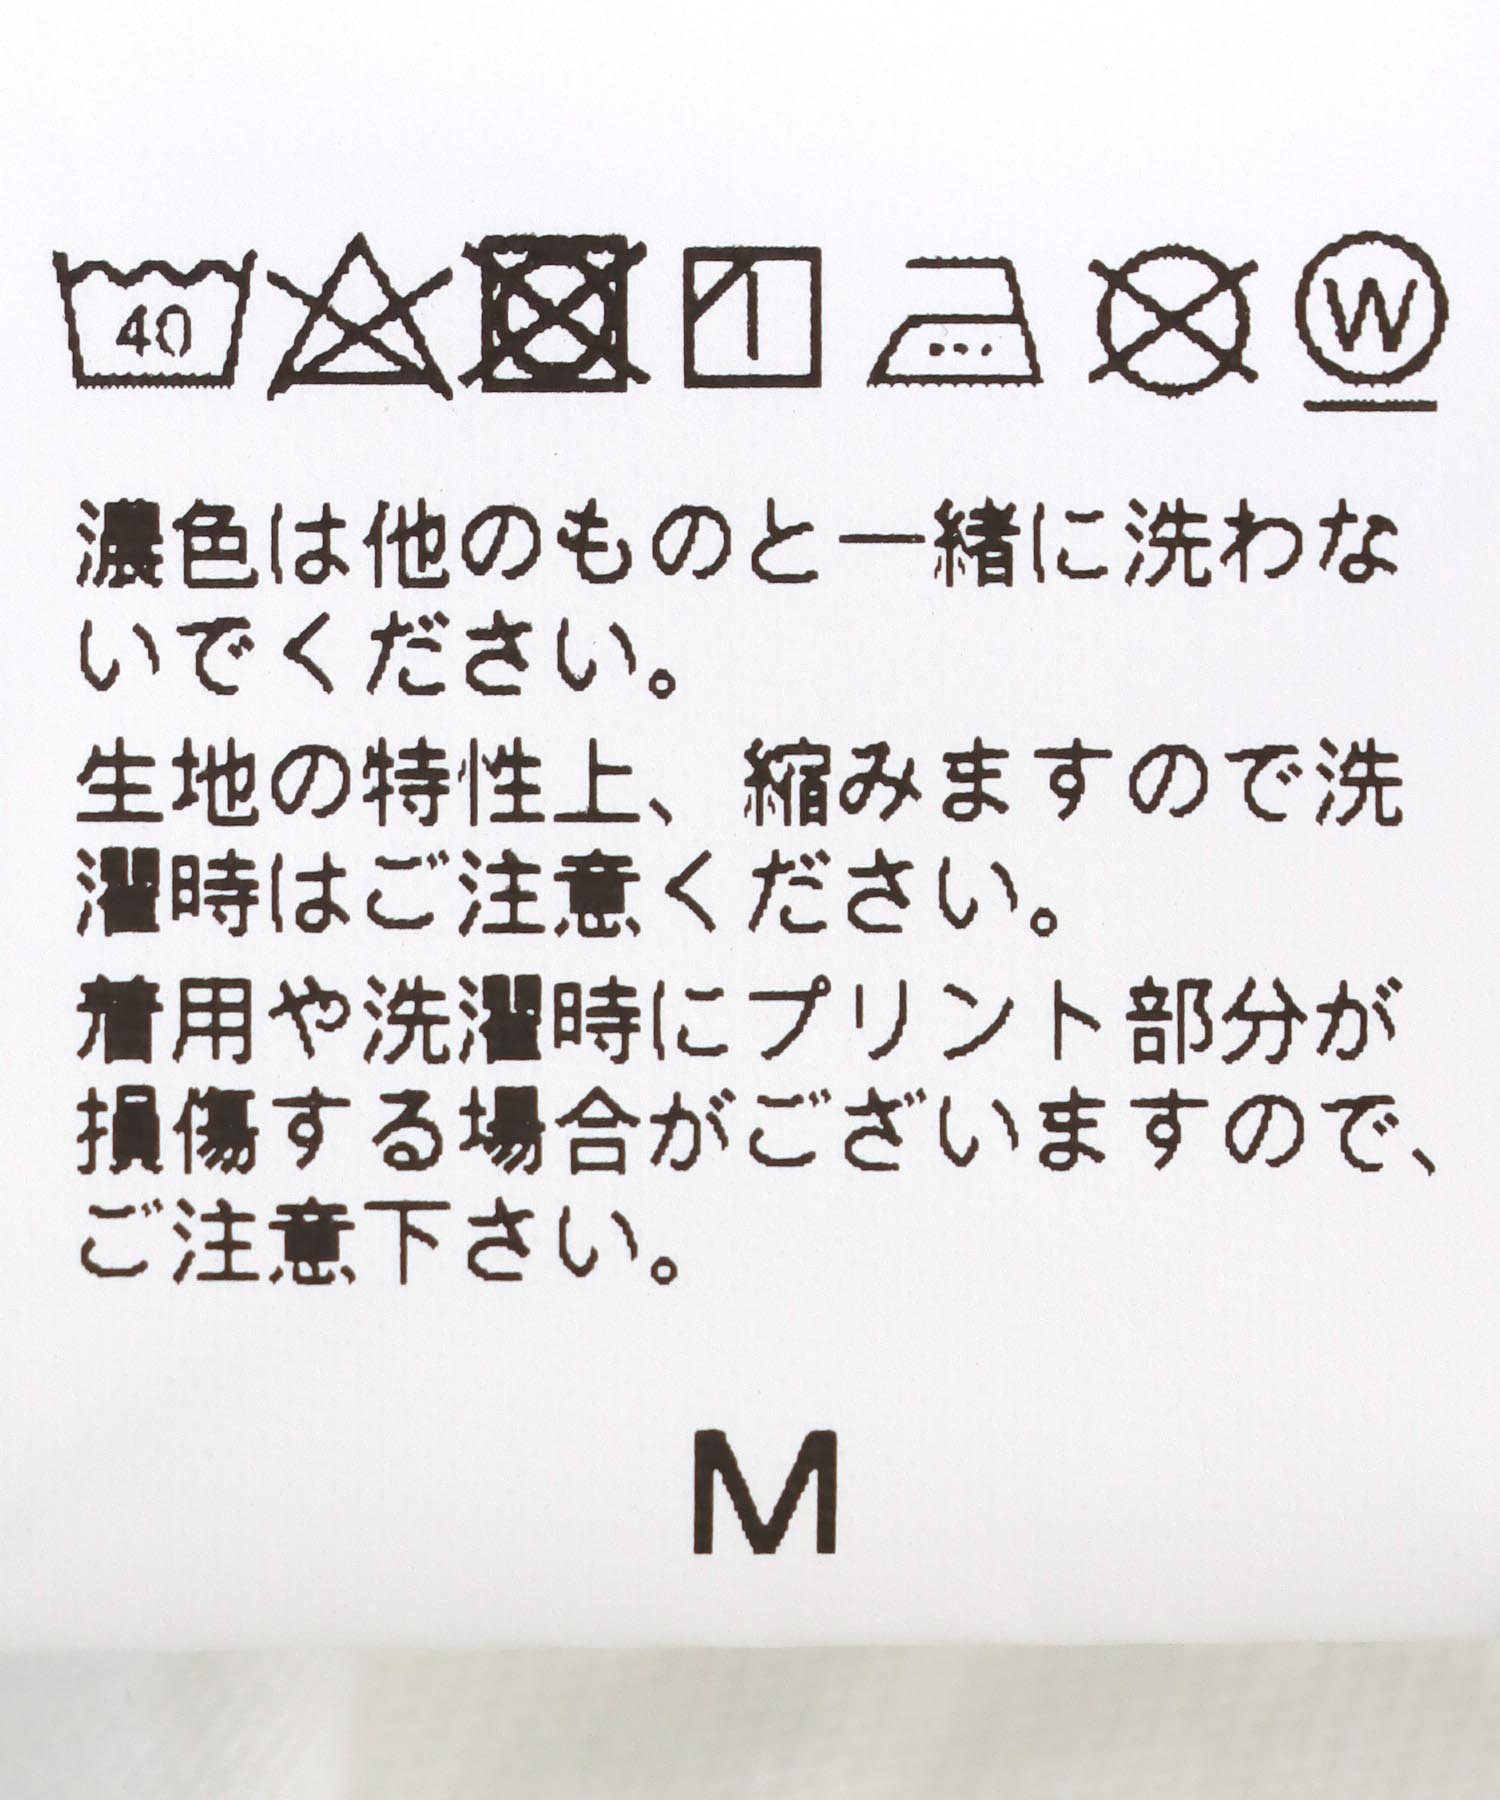 【GOOD WEAR/グッドウェア】ミッキーマウス ヴィンテージ プリントTシャツ